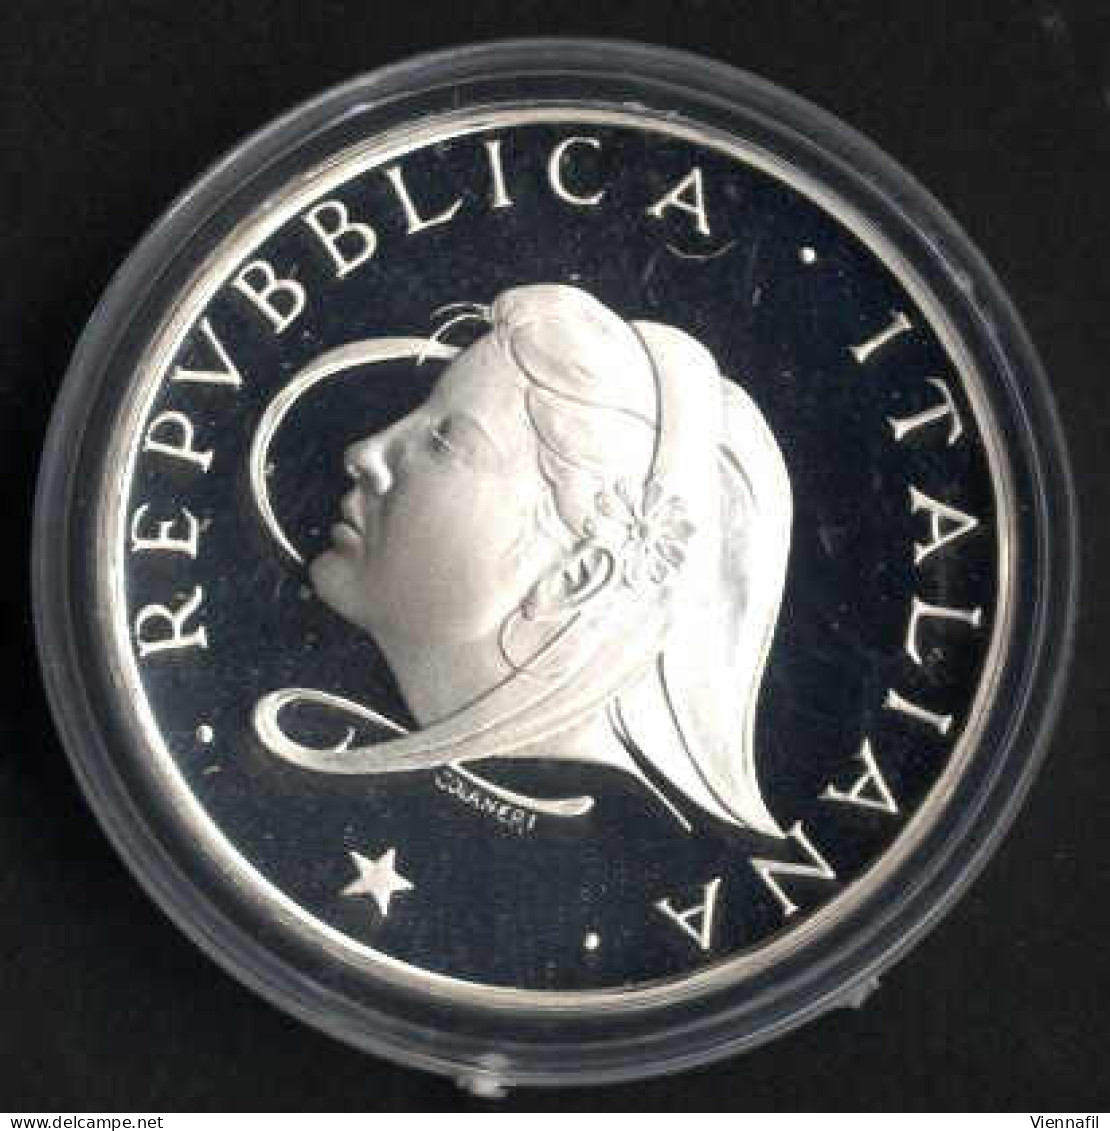 Repubblica di Venezia, Stato Pontificio, Regno d'Italia e Reppublica, insieme molto intressante di ca. 50 monete, in agg